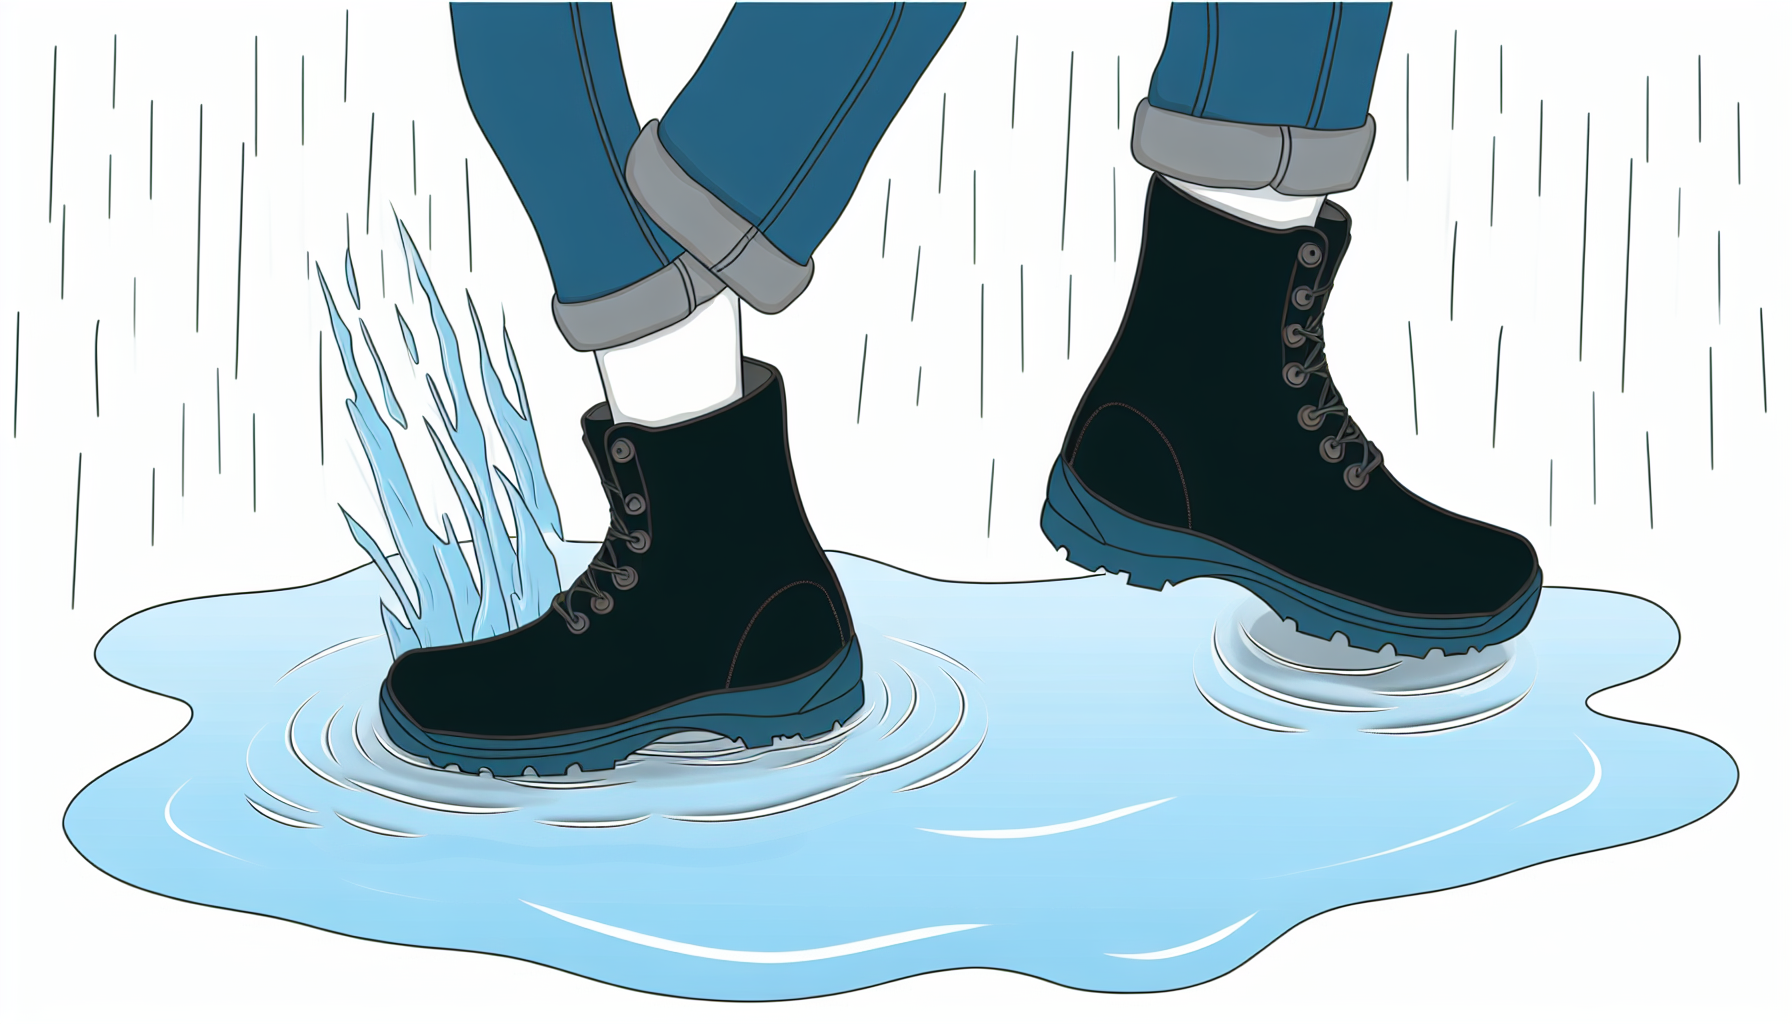 Astuces pour garder ses pieds au sec en milieu humide.